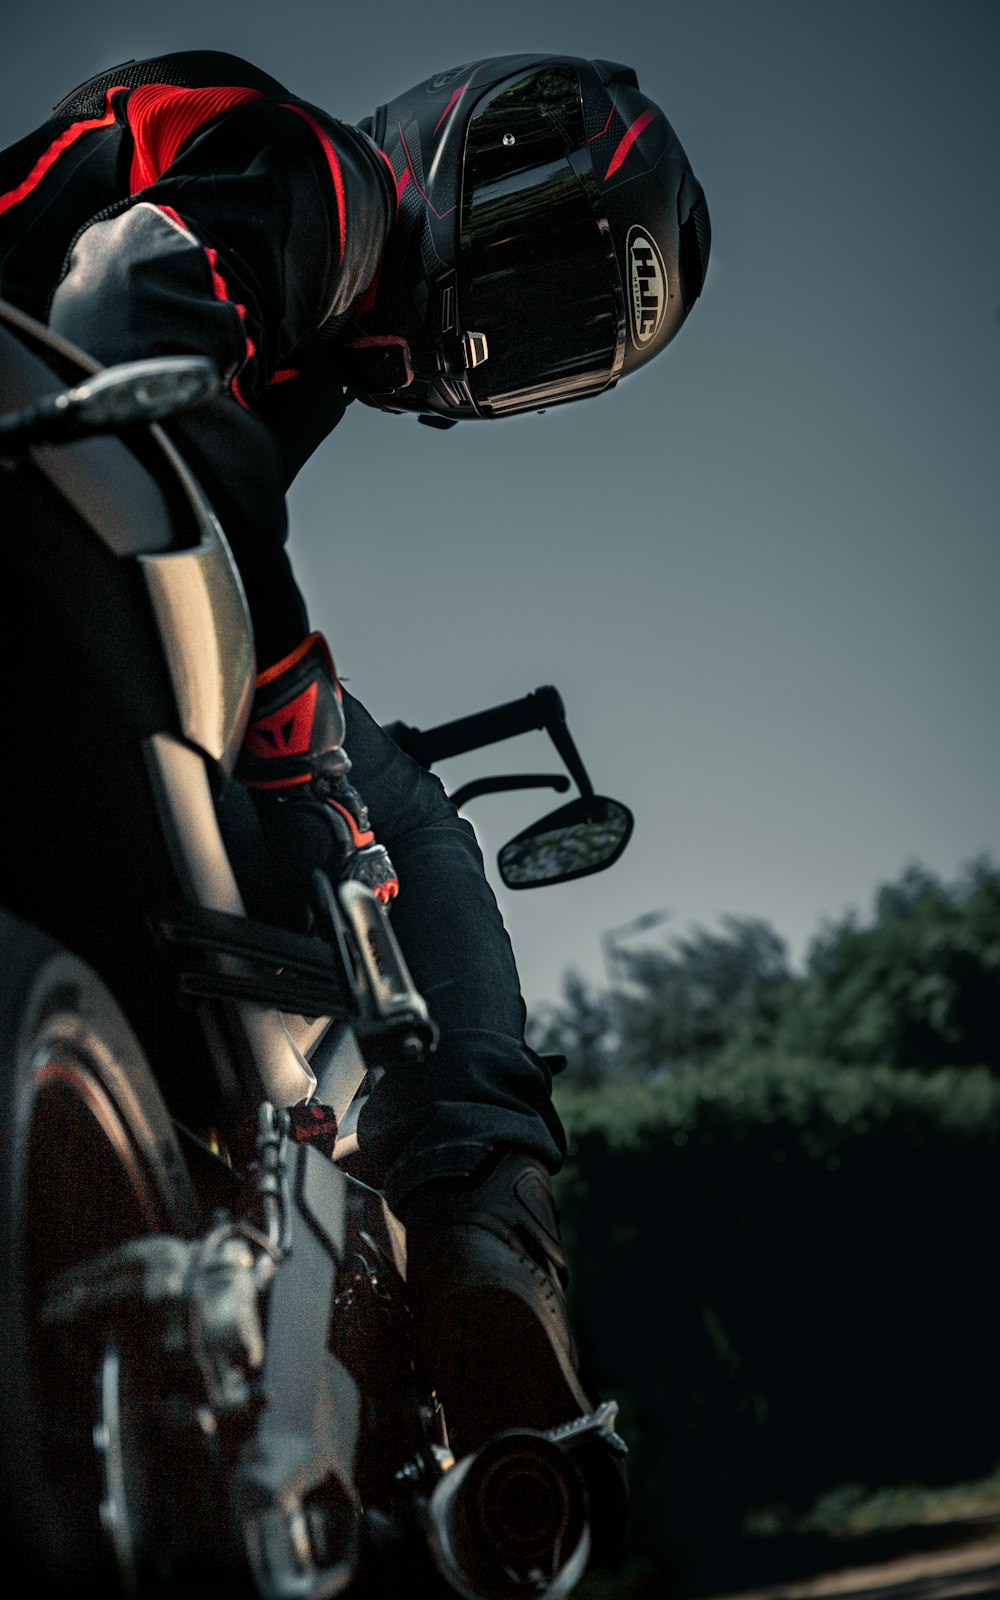 capacete de motocicleta preto e vermelho